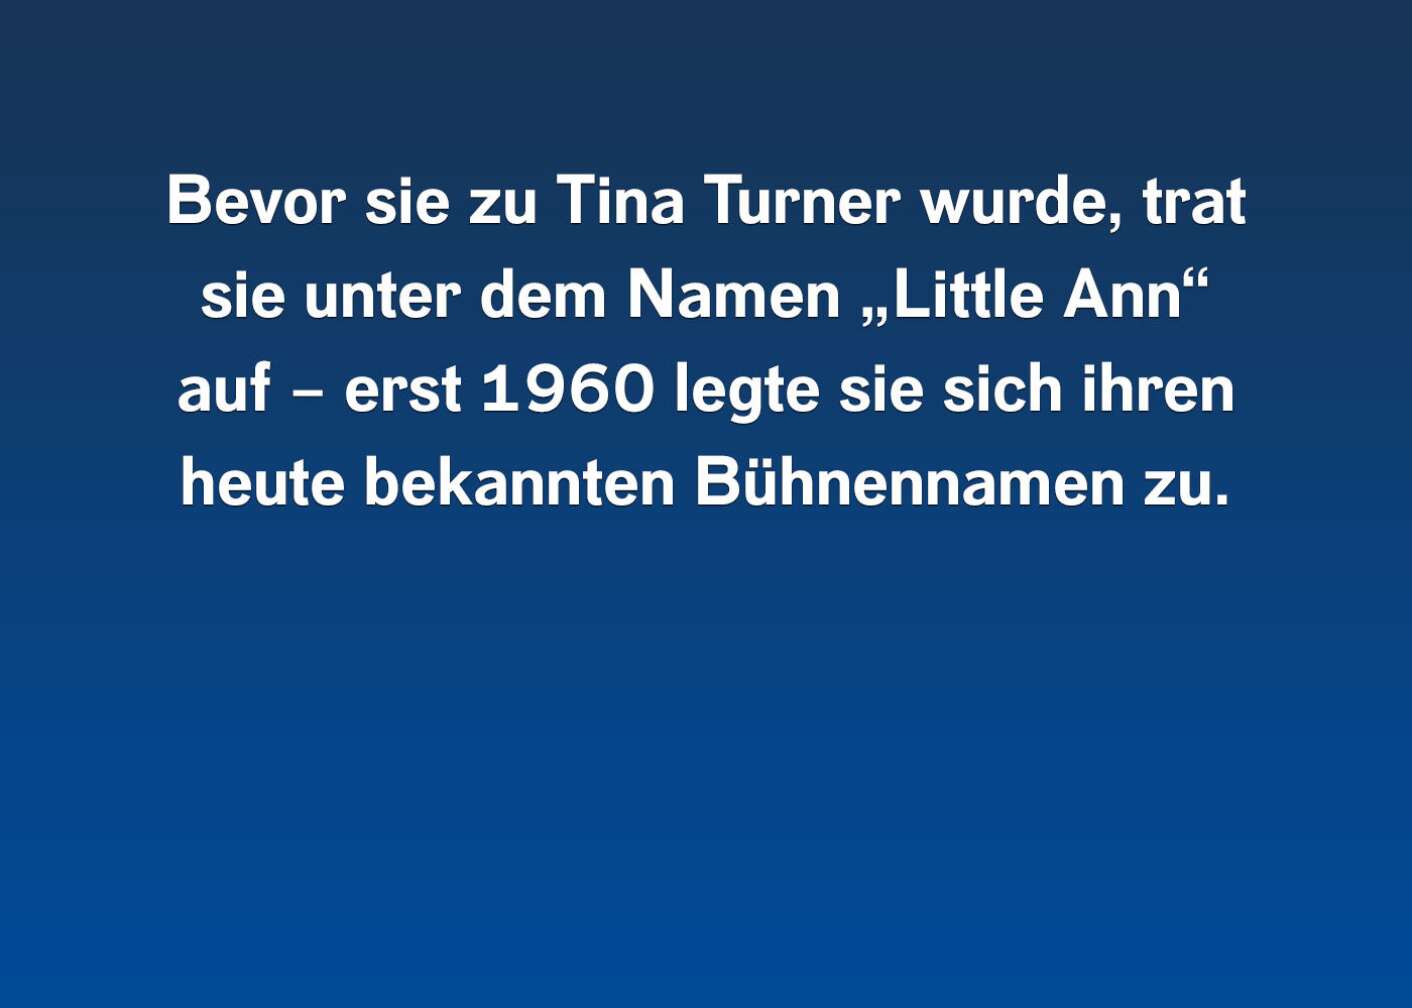 10 Fakten über Tina Turner